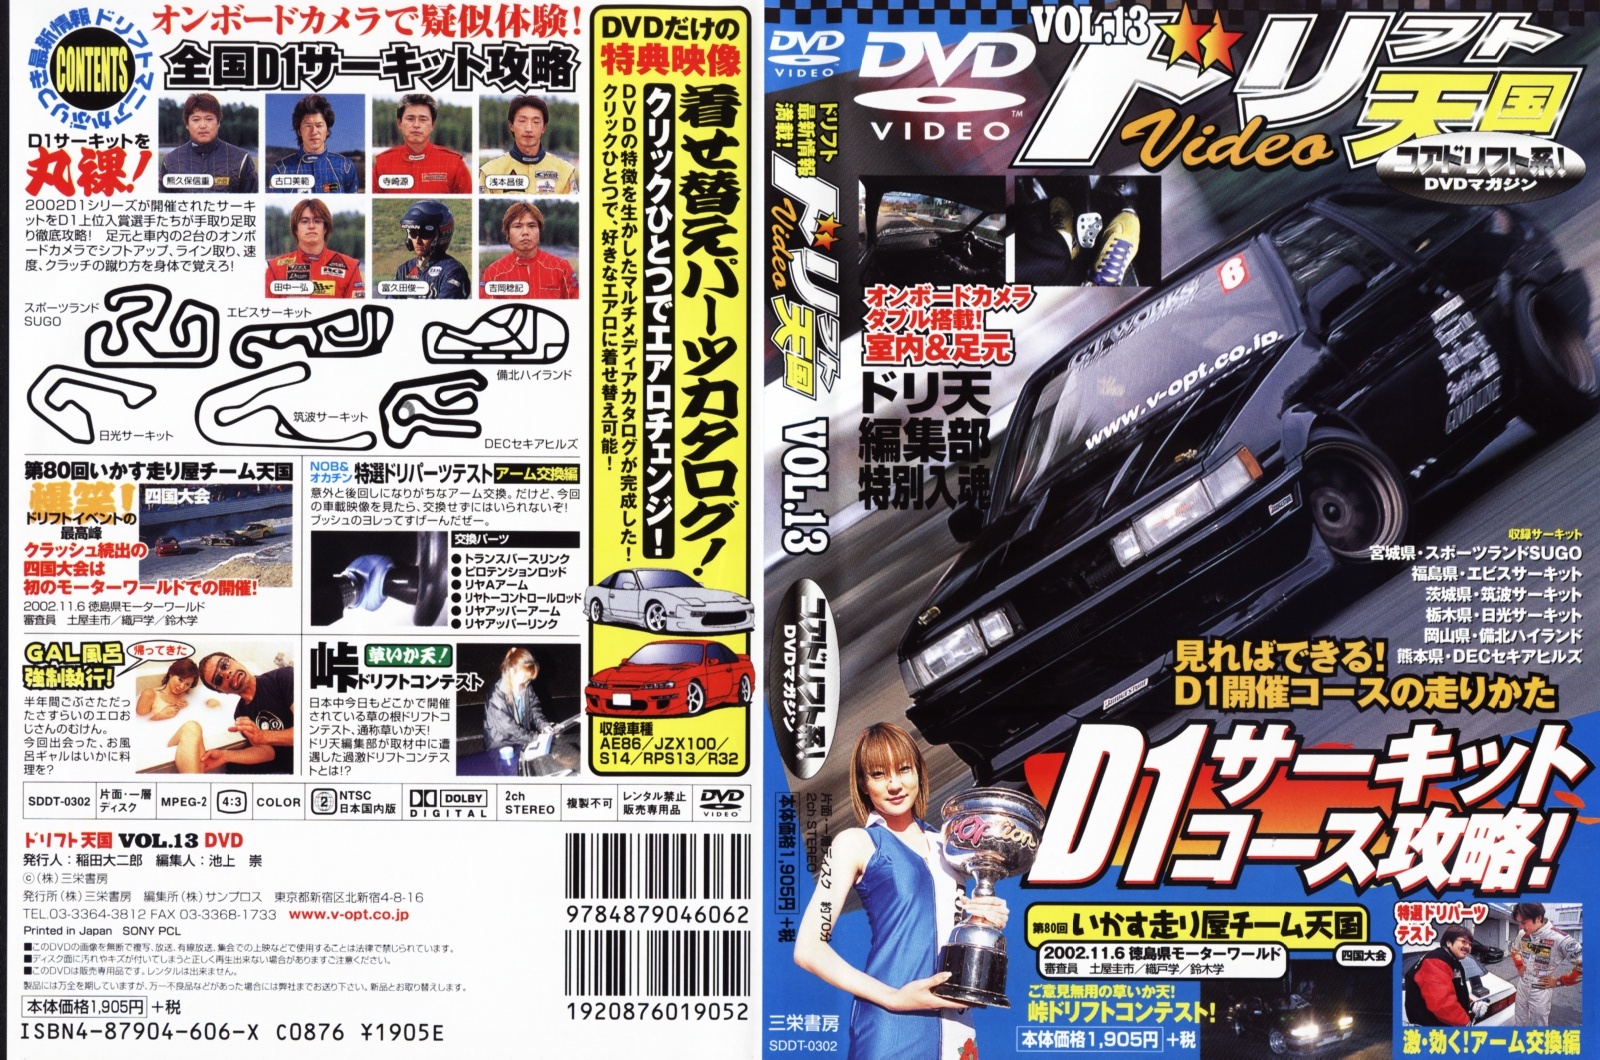 Jaquette DVD Video option drift vol 13